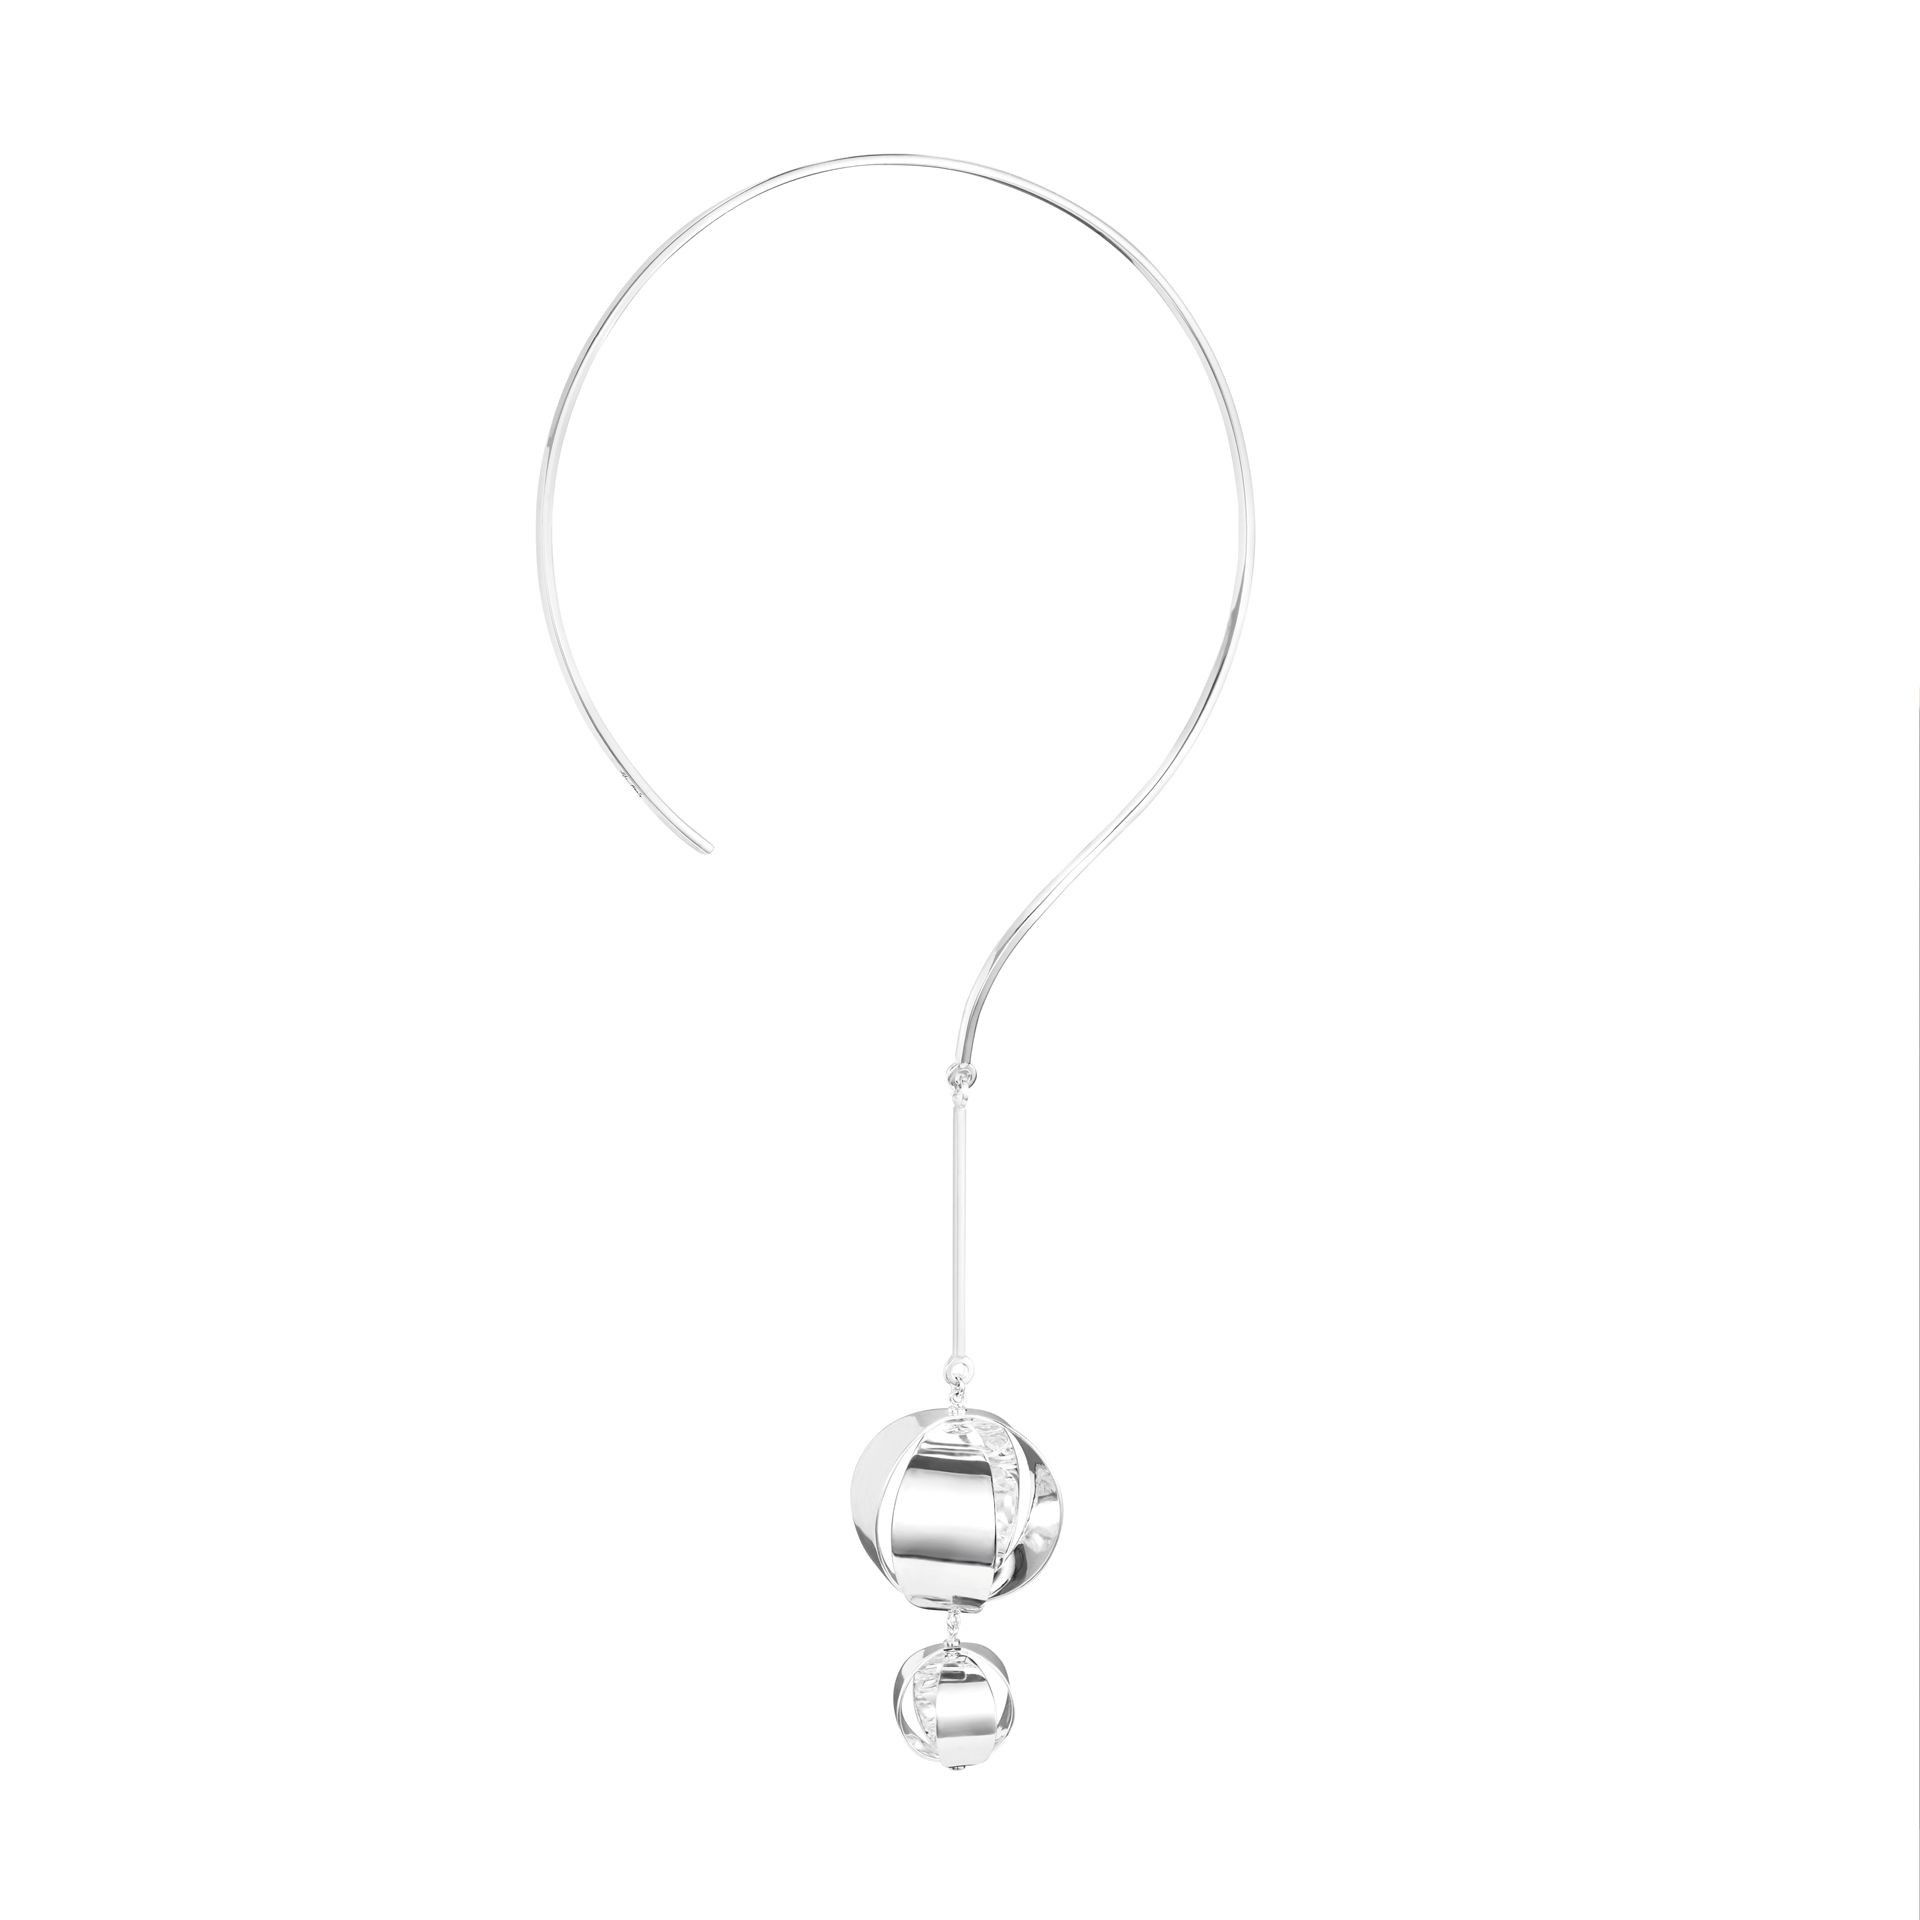 Efva Attling Balloons Collar. ONE SIZE - SILVER